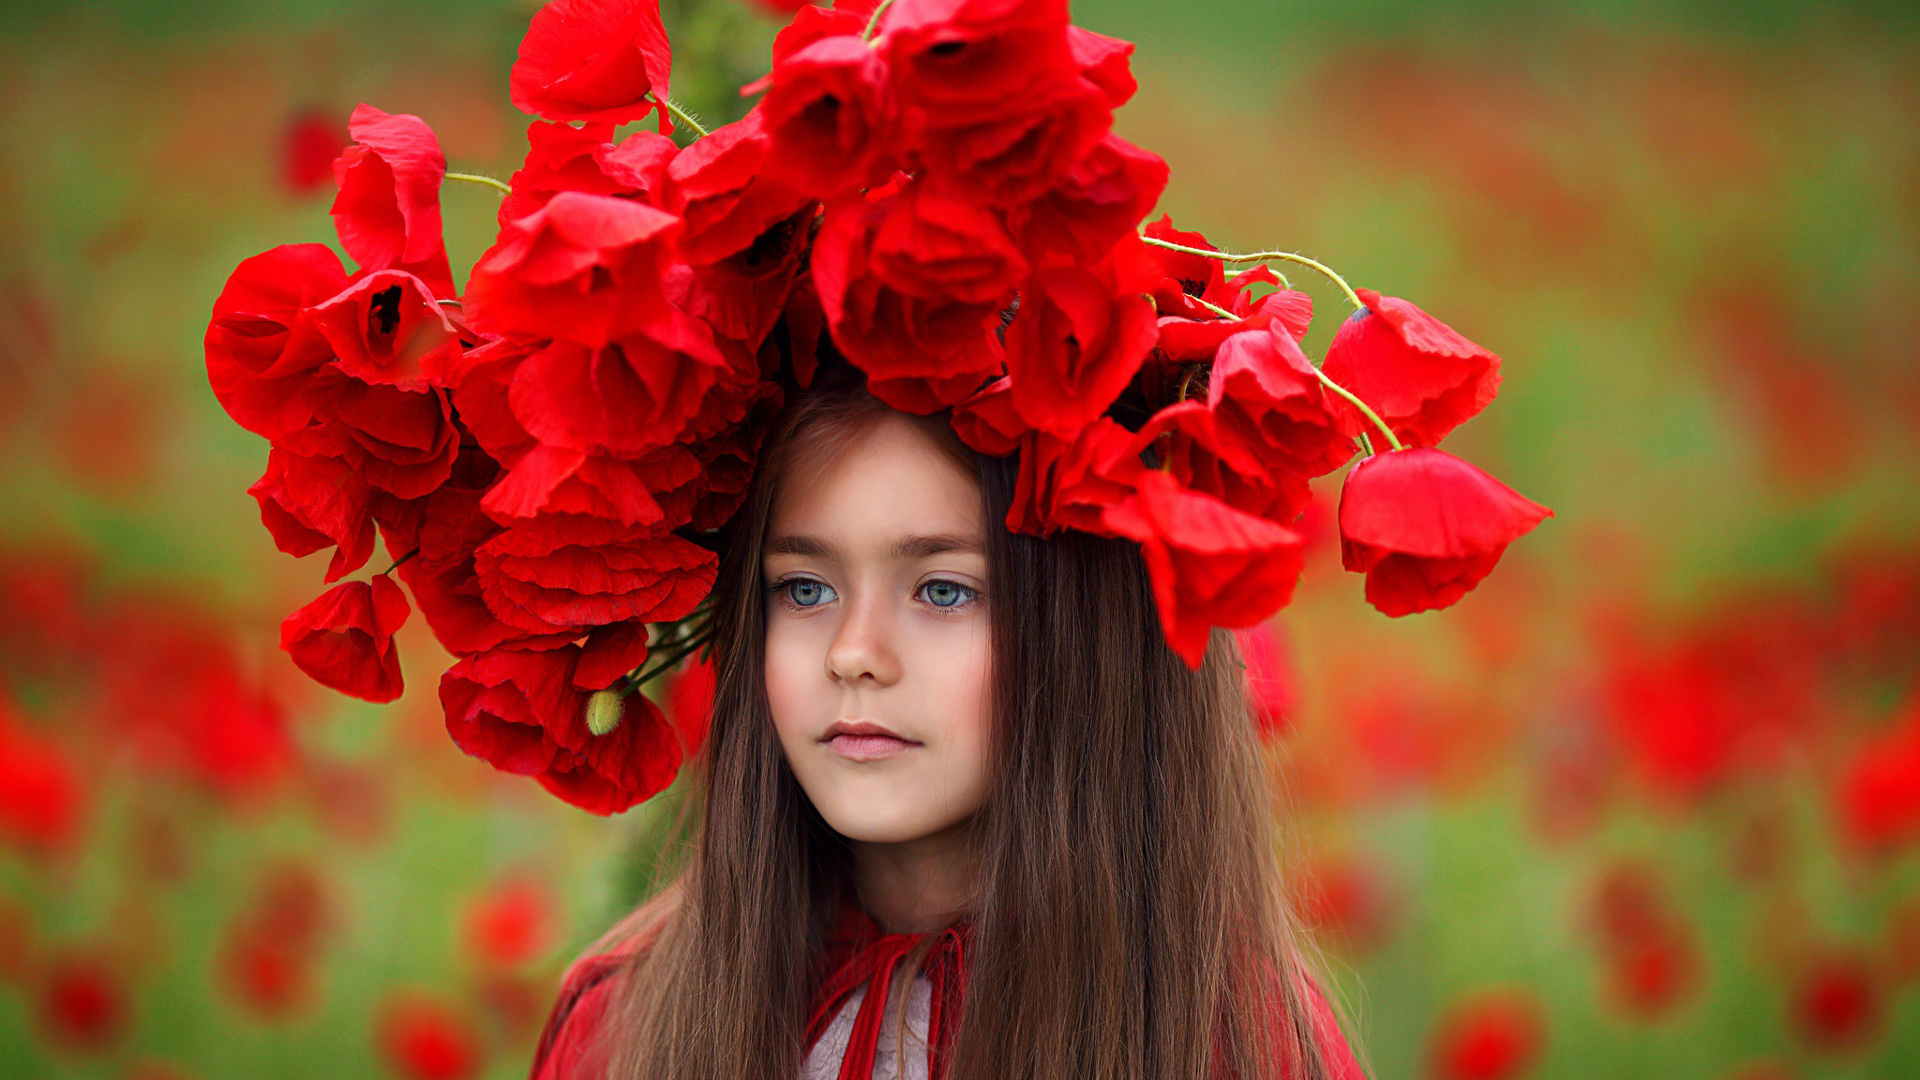 Blue Eyes Long Hair Cute Little Girl Is Having Red Flower Wreath On Head Wearing Red Dress In Blur Red Flowers Wallpaper 2K Cute